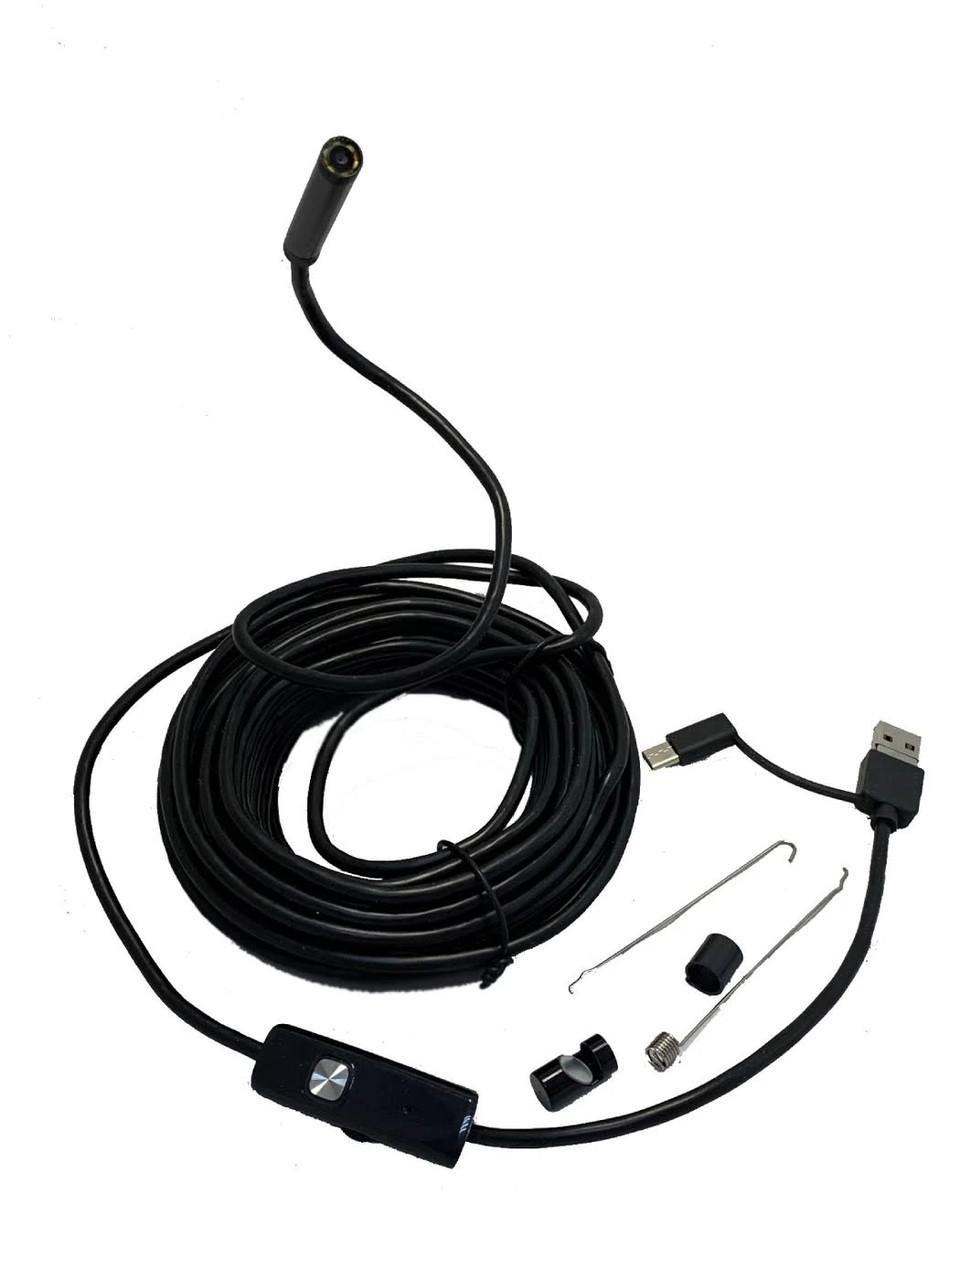 ᐉ Эндоскоп для смартфона водонепроницаемый жесткий с подсветкой 3 м